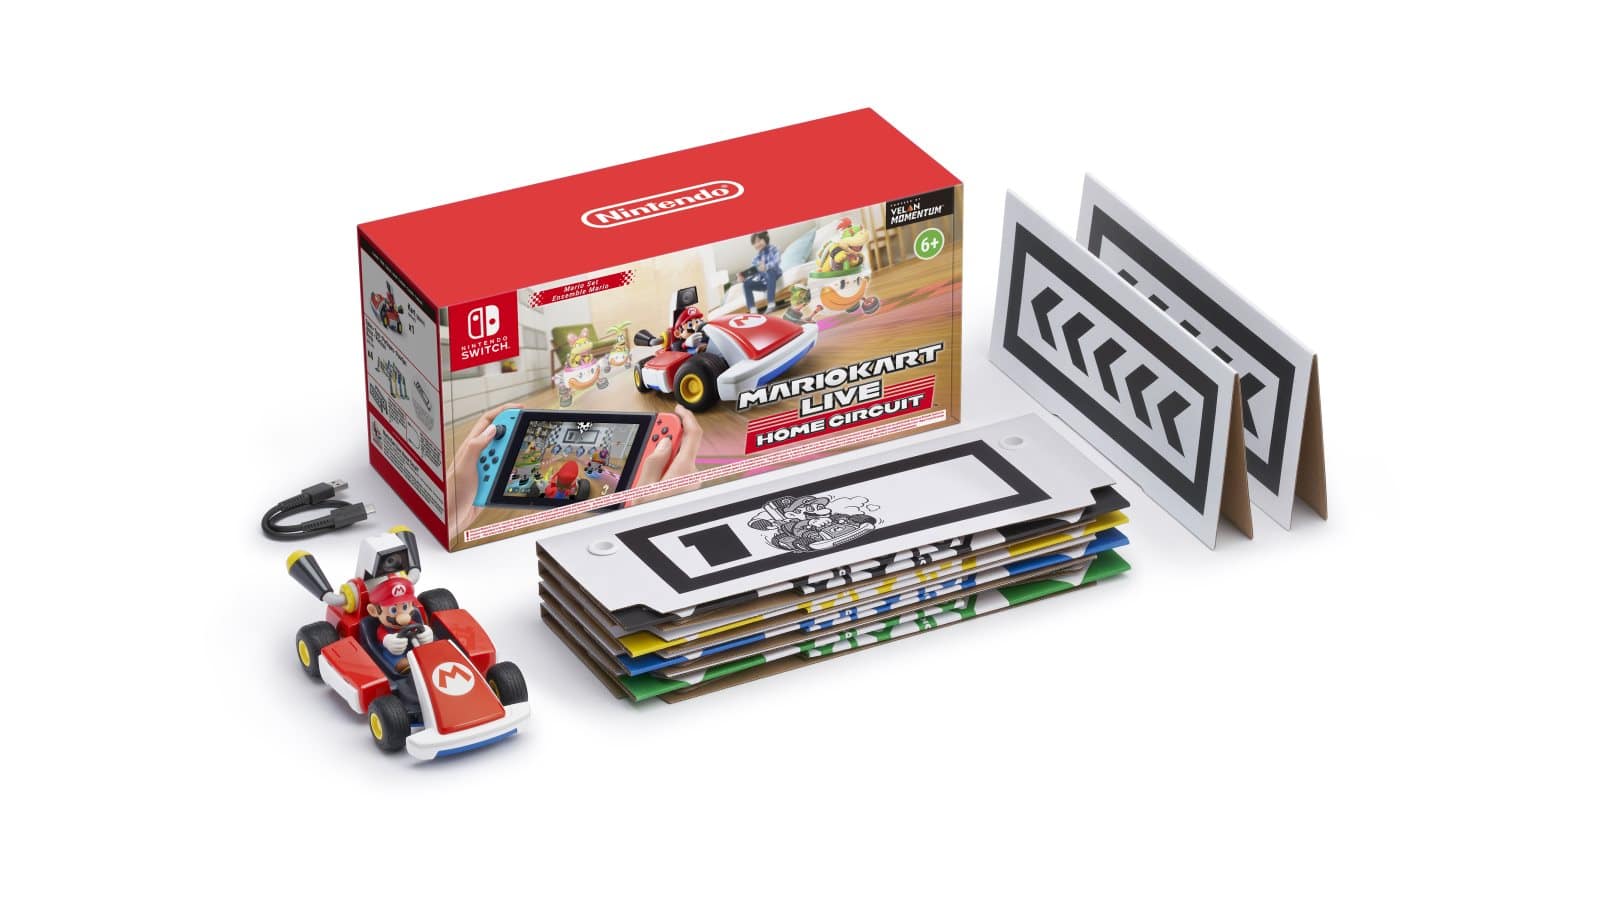 ערכת Mario Kart Live: Home Circuit בעיצוב מריו - תכולה